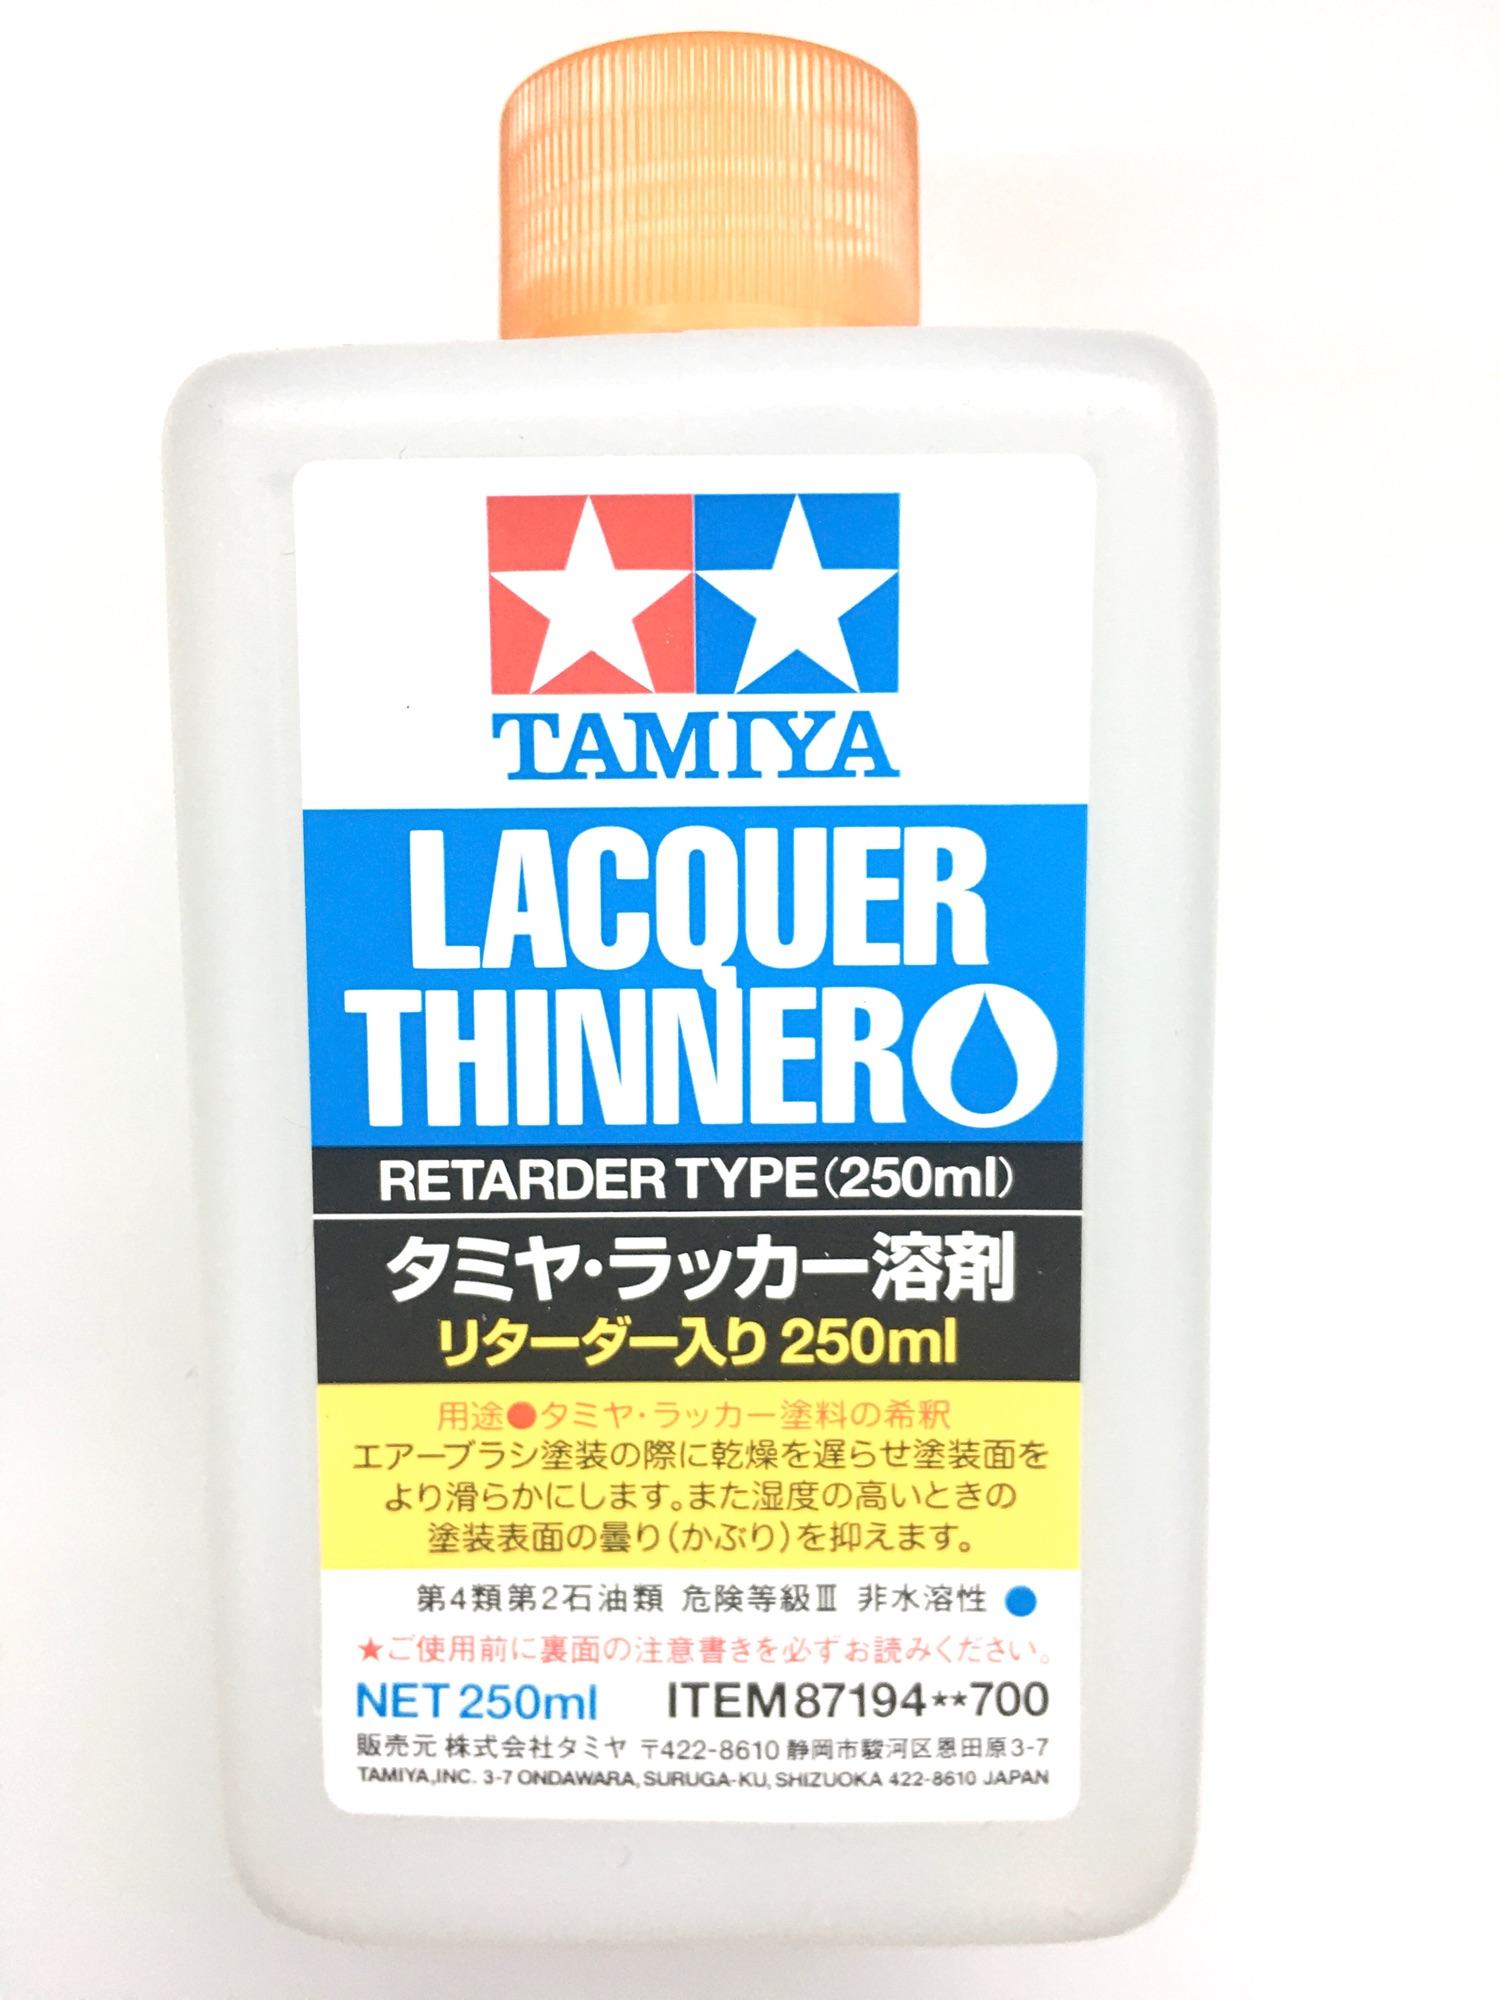 Tamiya Thinner #87194 - Tamiya Lacquer Thinner (Retarder Type